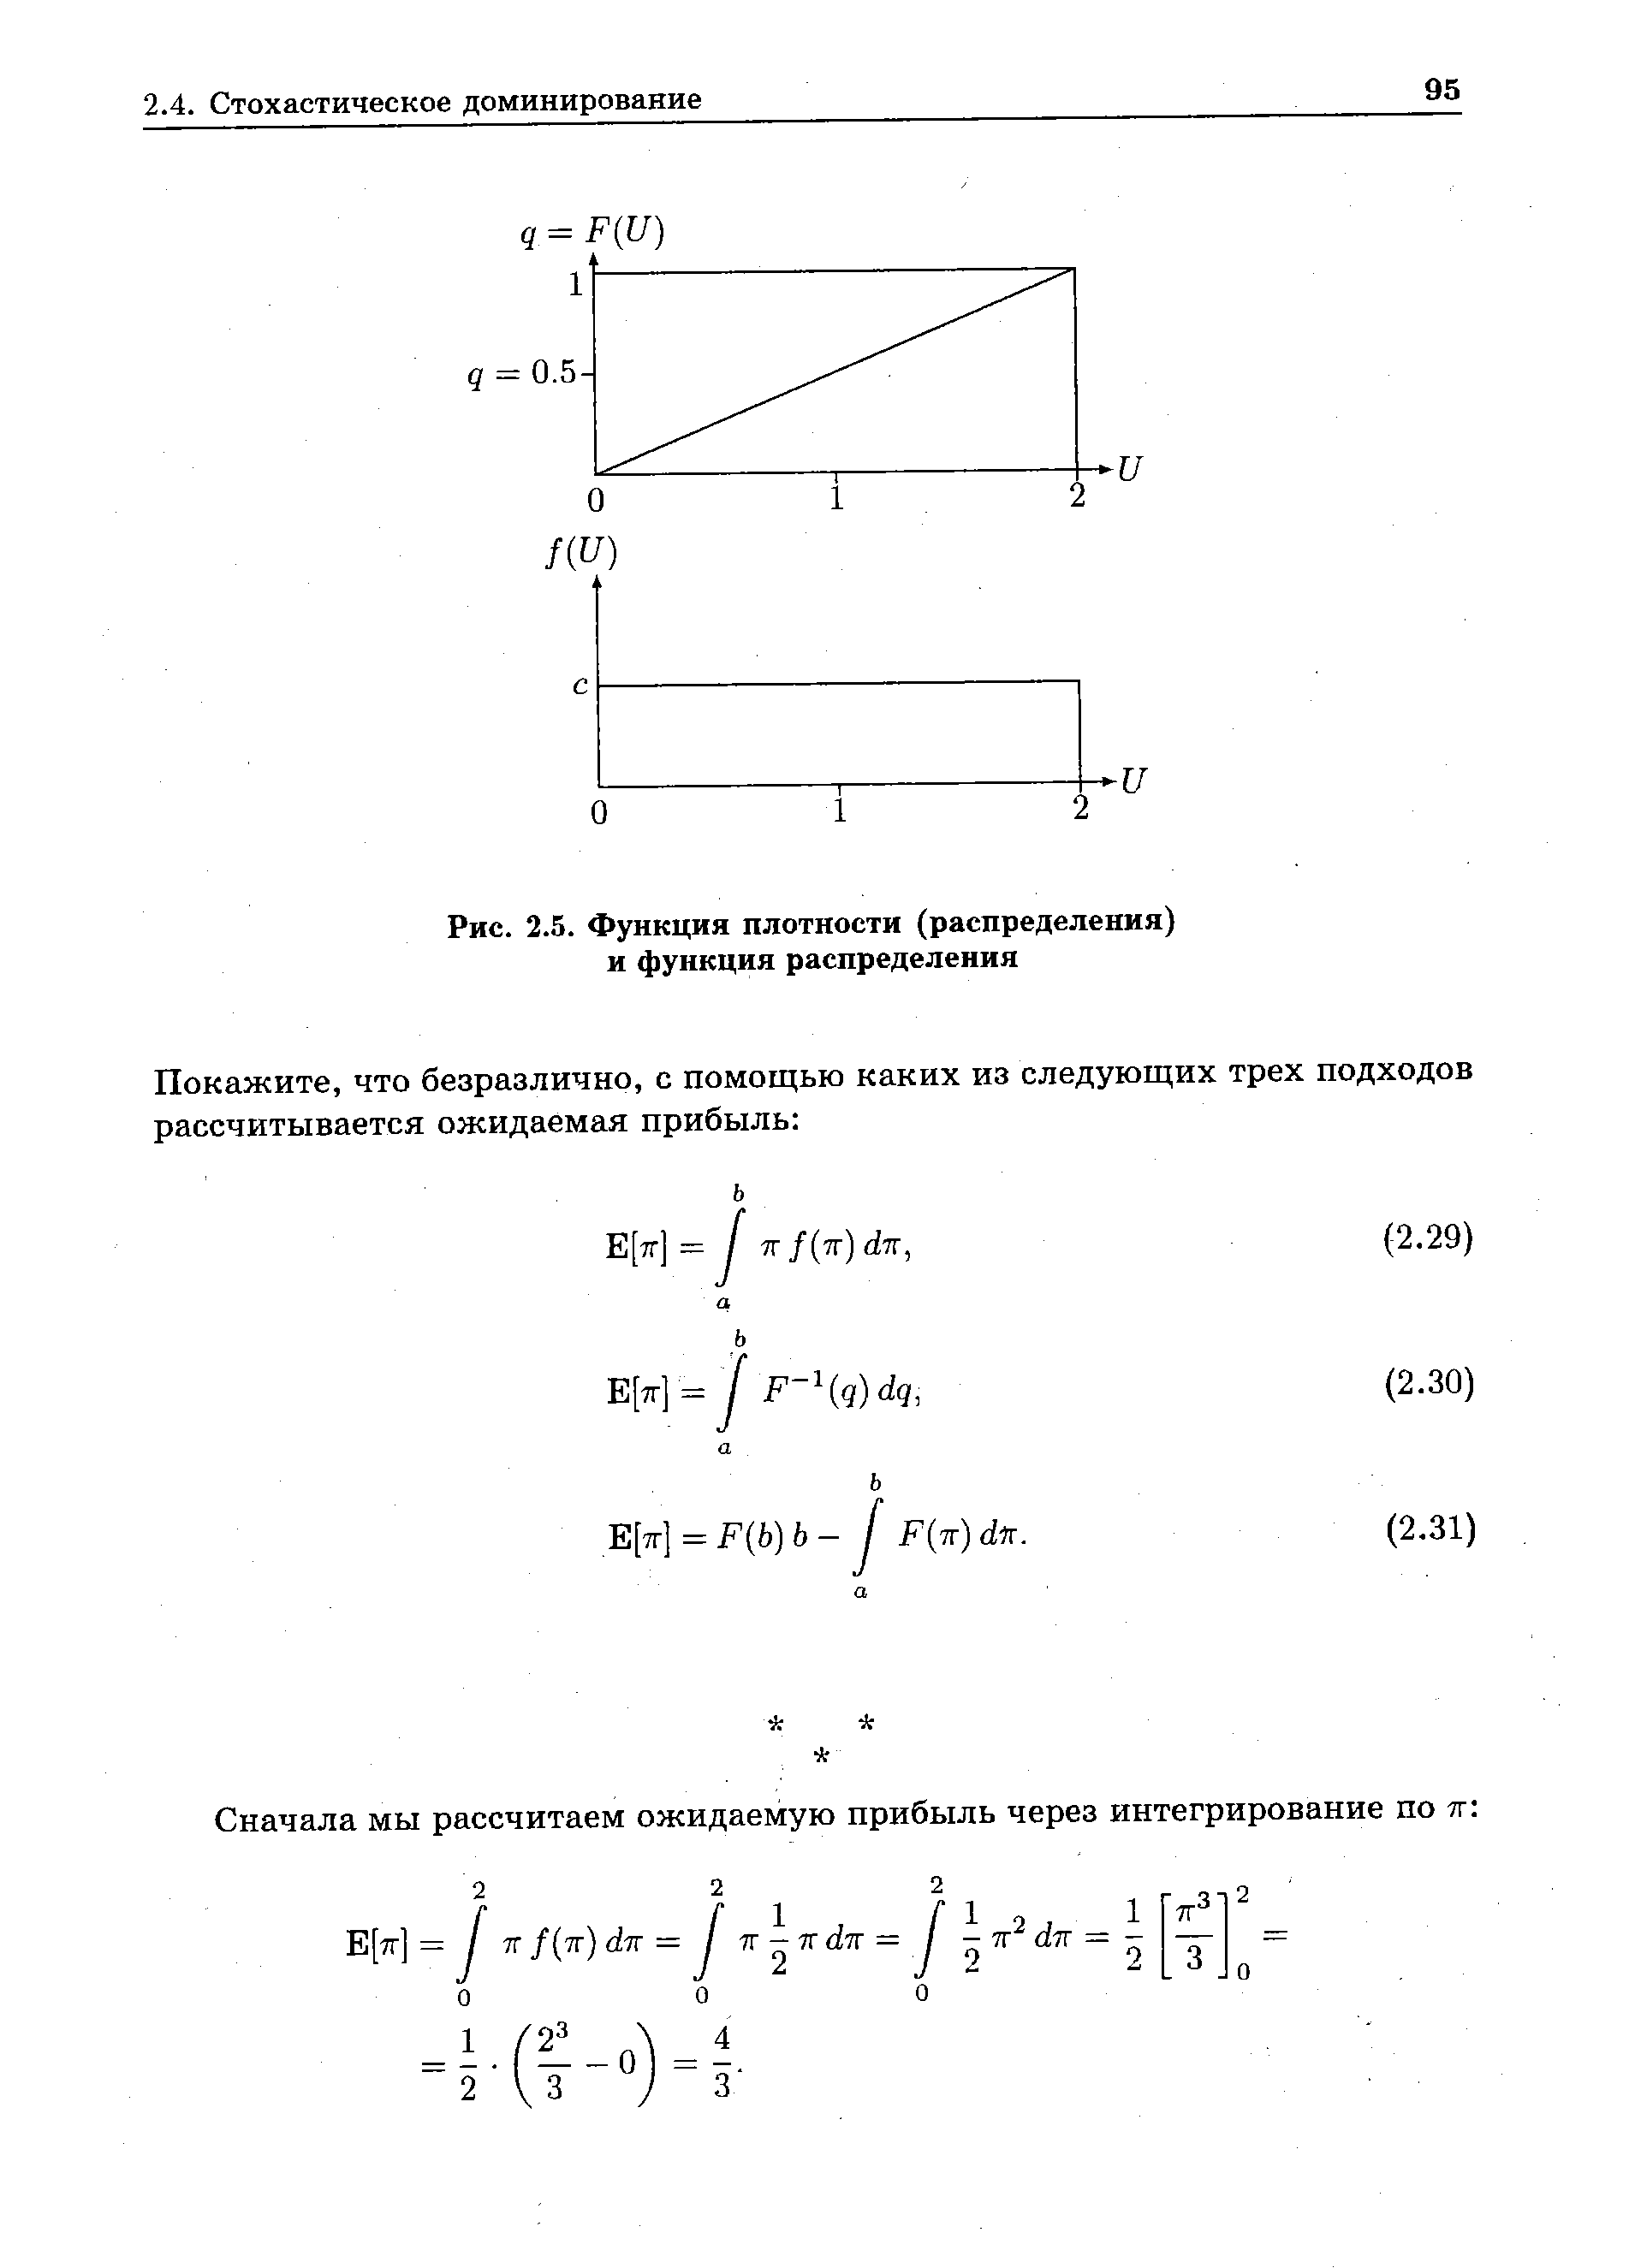 Рис. 2.5. Функция плотности (распределения) и функция распределения
